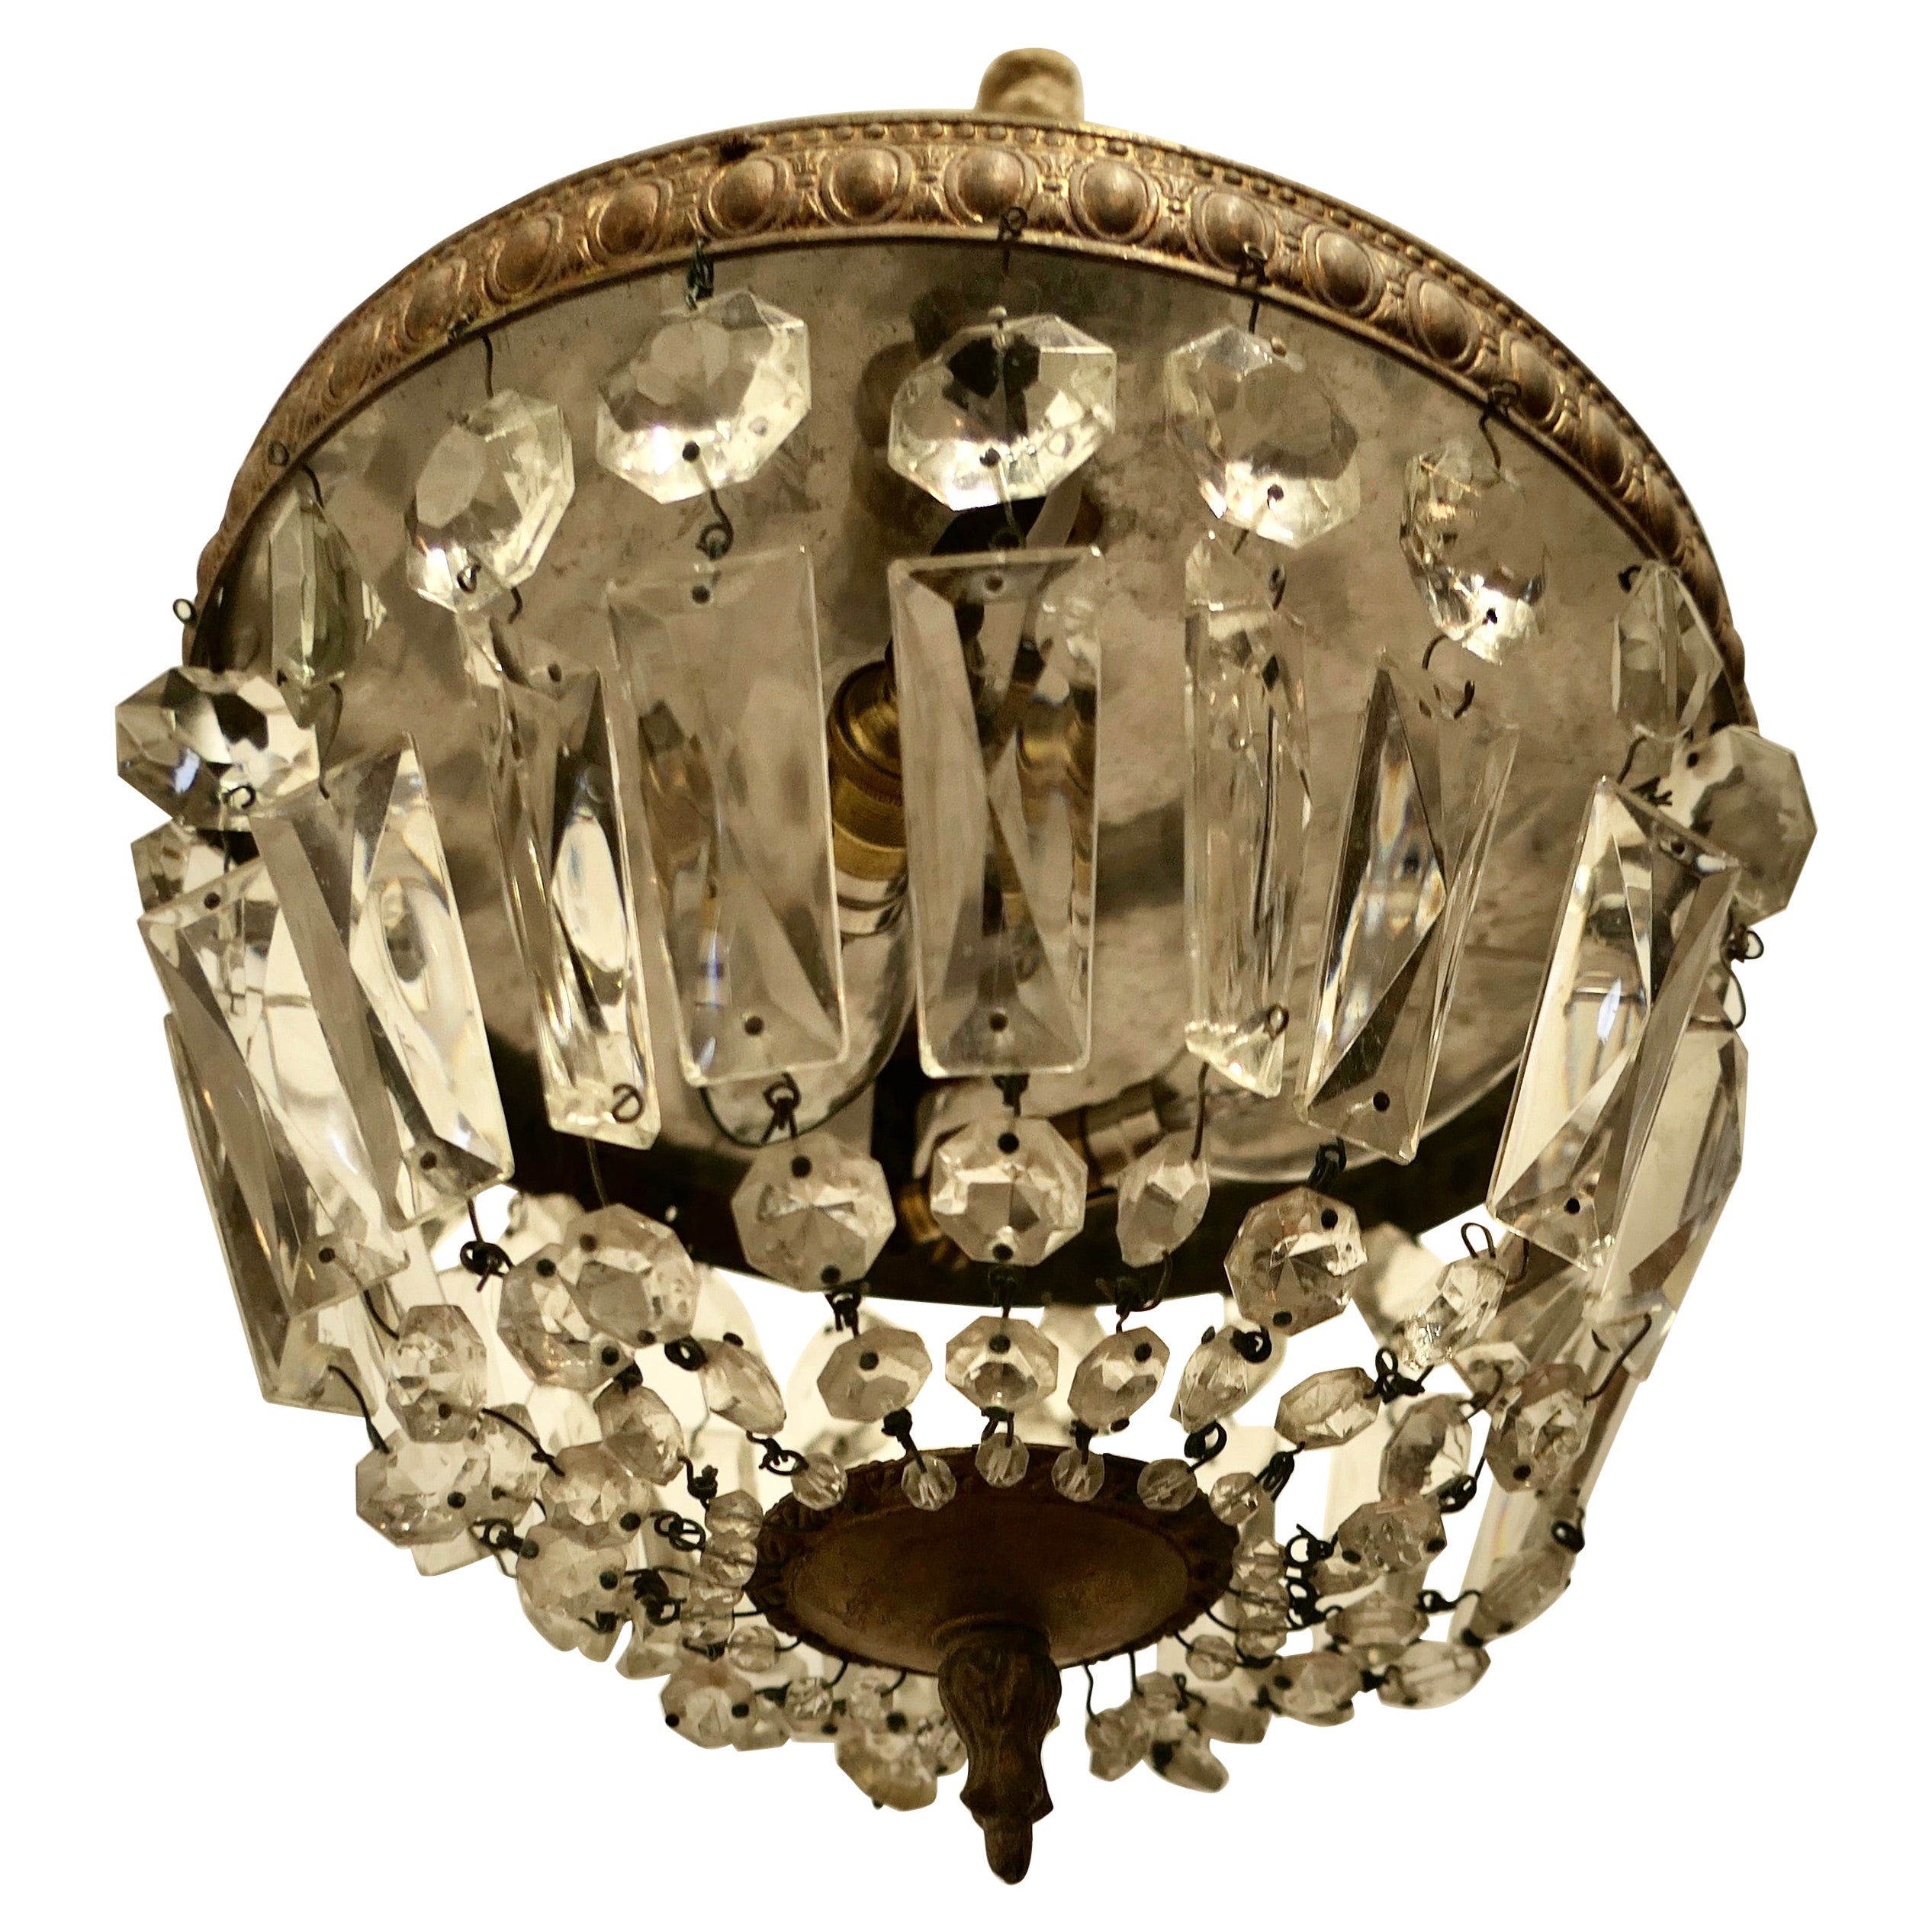 Kleiner Kristallkorb-Kronleuchter im französischen Empire-Stil   